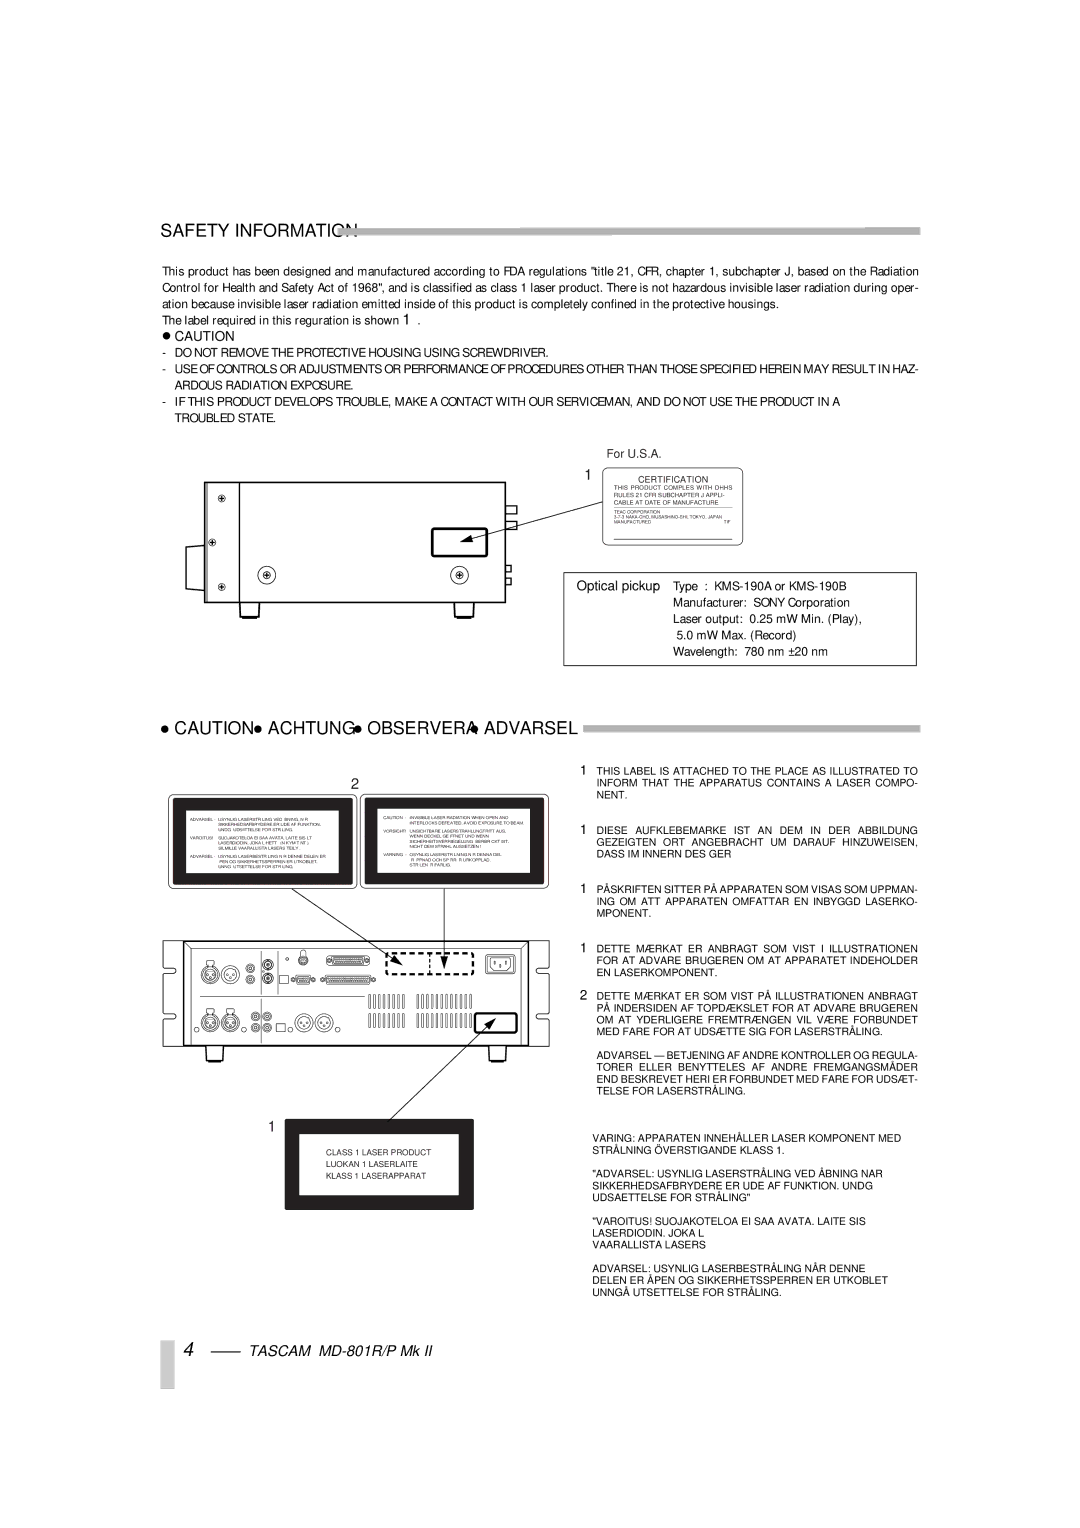 Tascam MD-801P Mk II, MD-801R/P Mk II owner manual Safety Information 